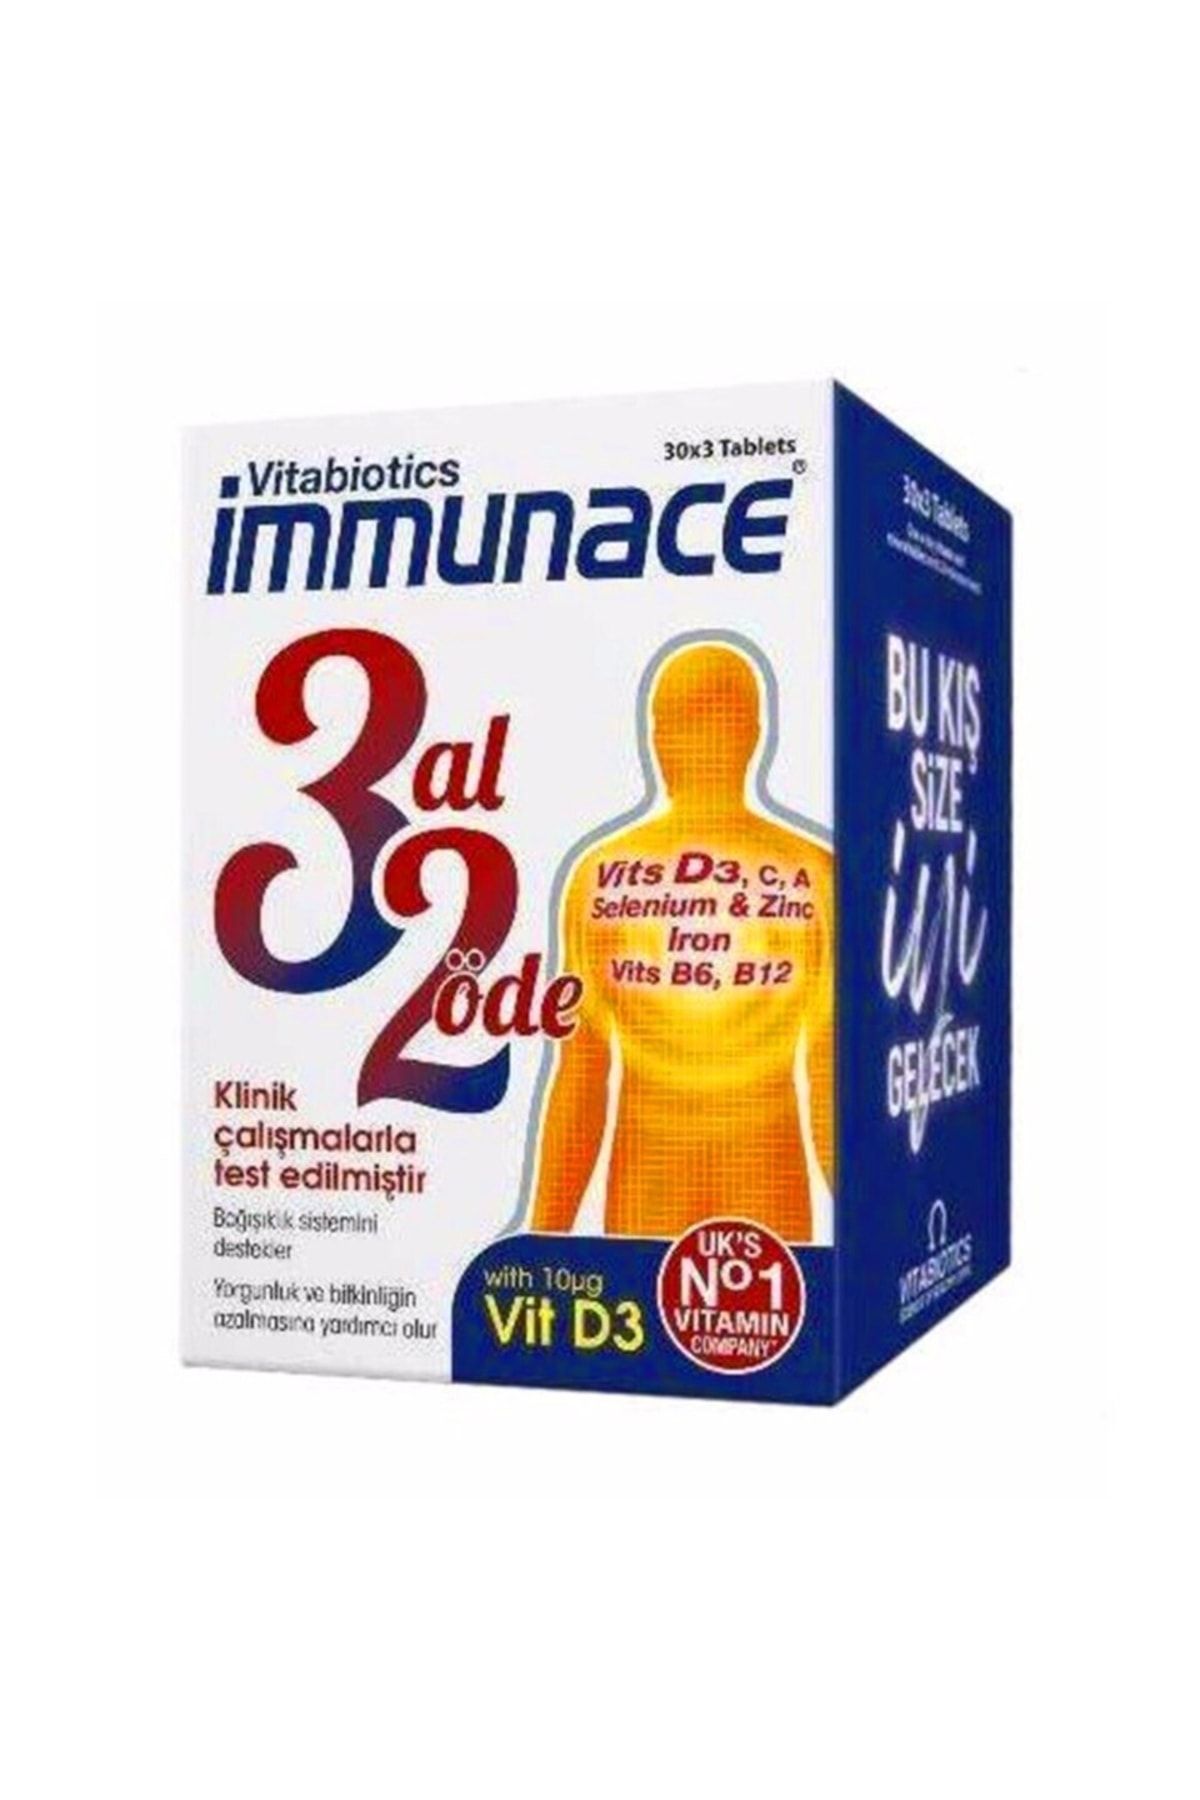 Immunace Immunace 90 Tablet